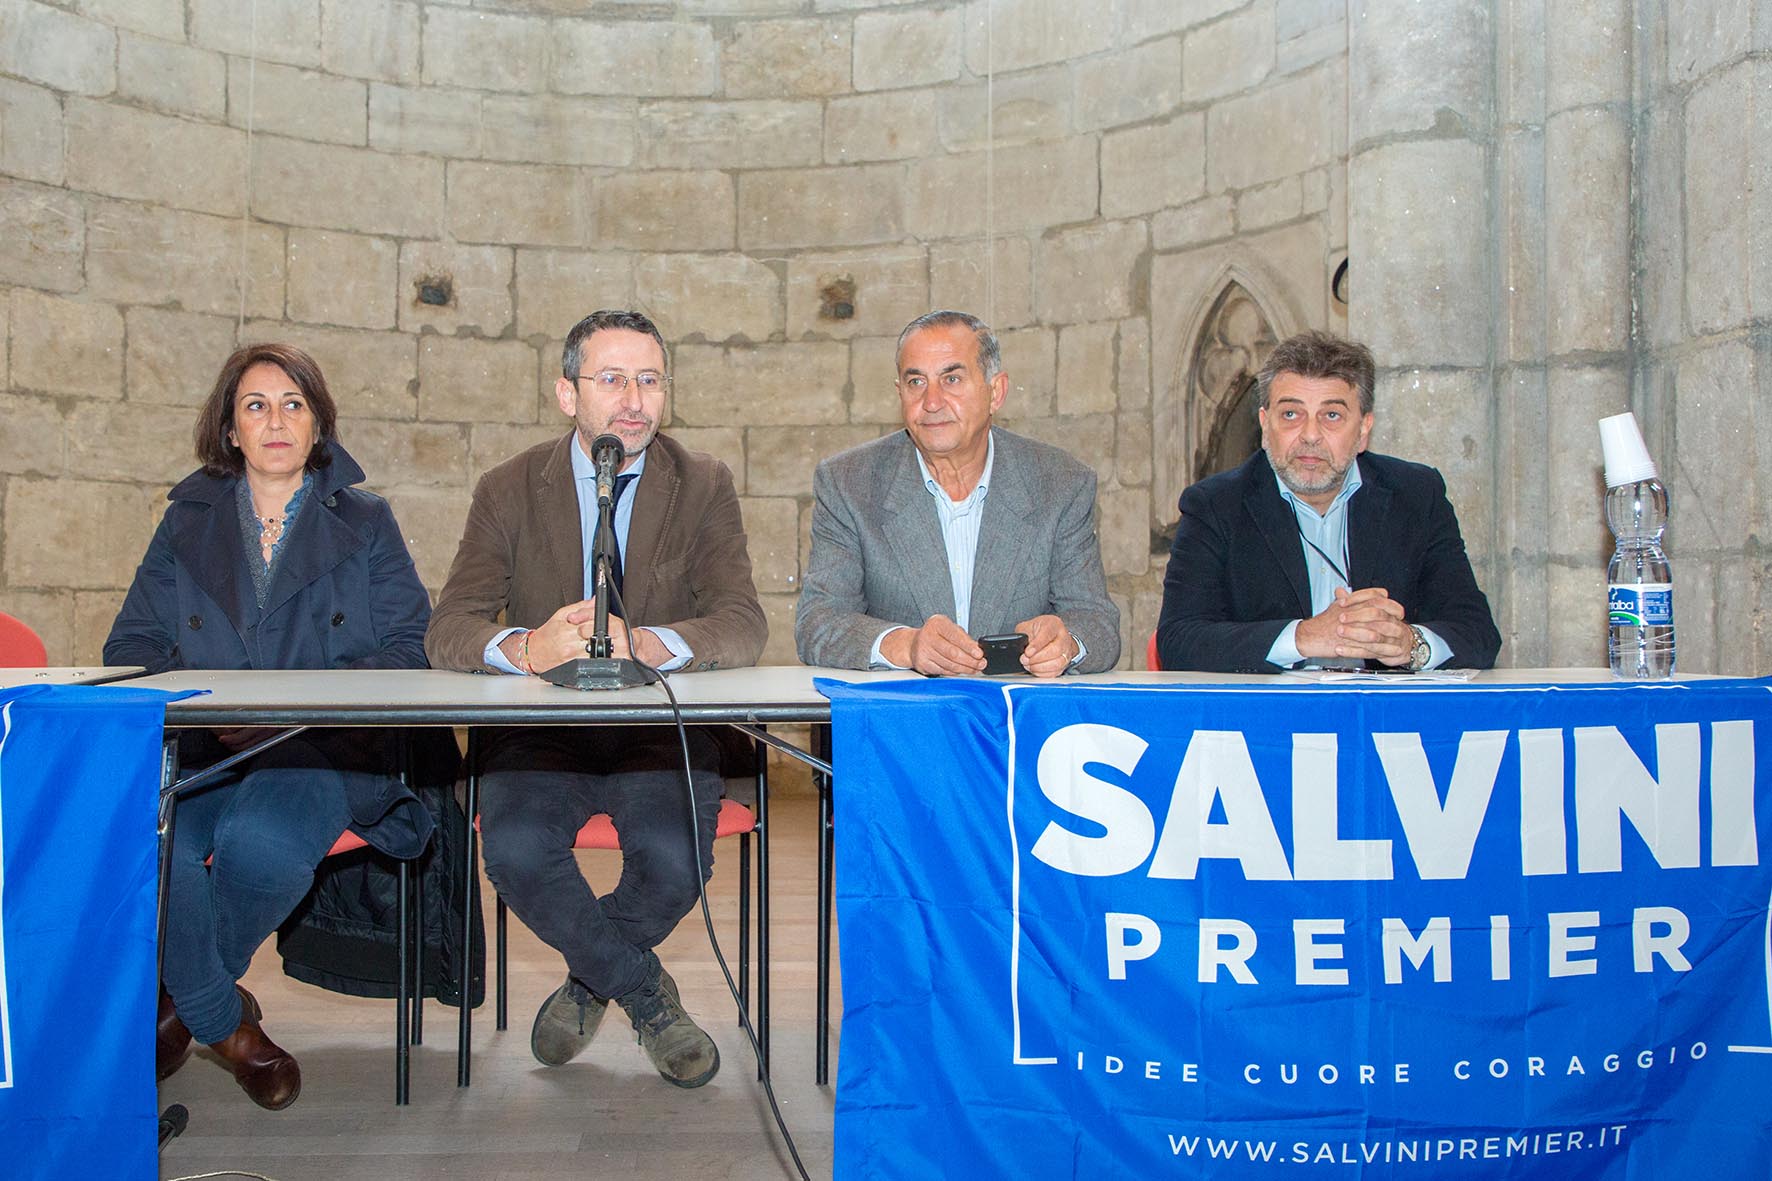 Verso le Politiche, la Lega incontra i propri elettori: "Salvini ha portato entusiasmo"